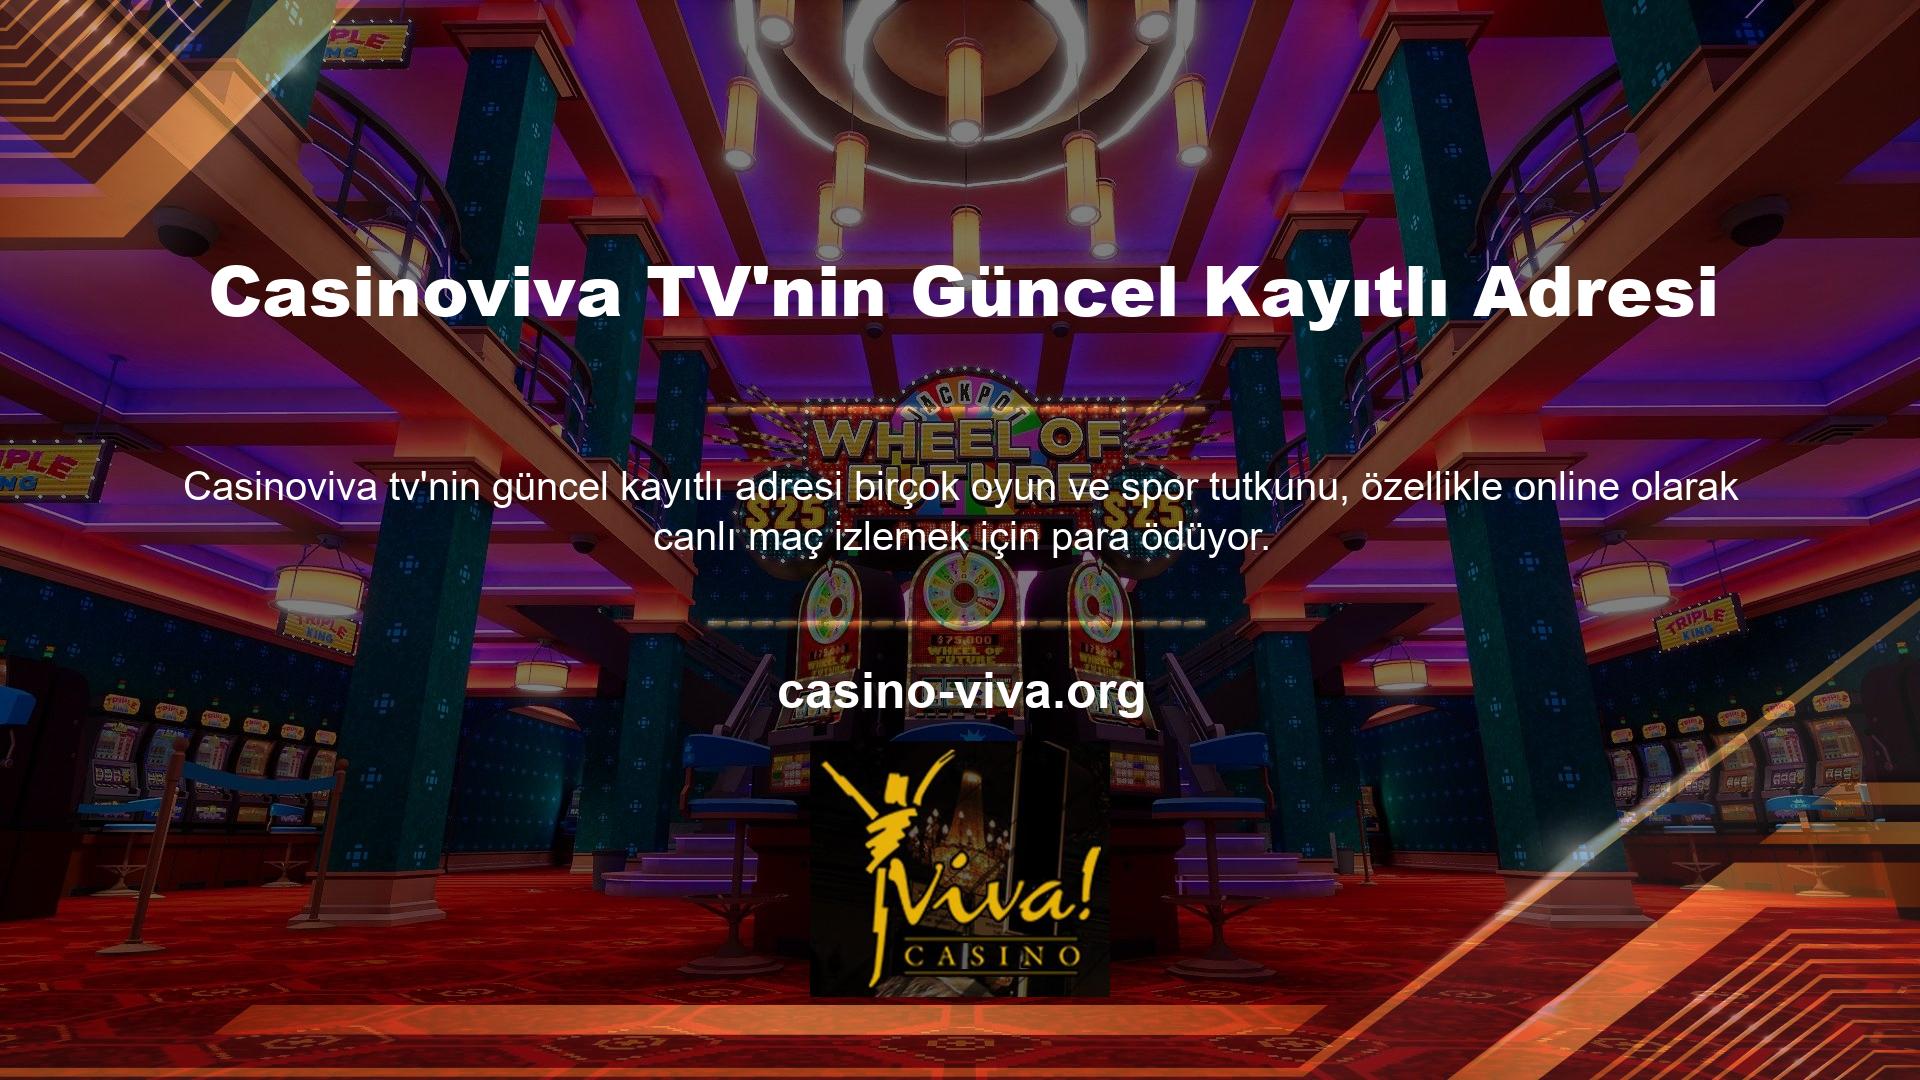 Casinoviva TV, kullanıcılara canlı oyun sağlamak için herhangi bir ücret talep etmez